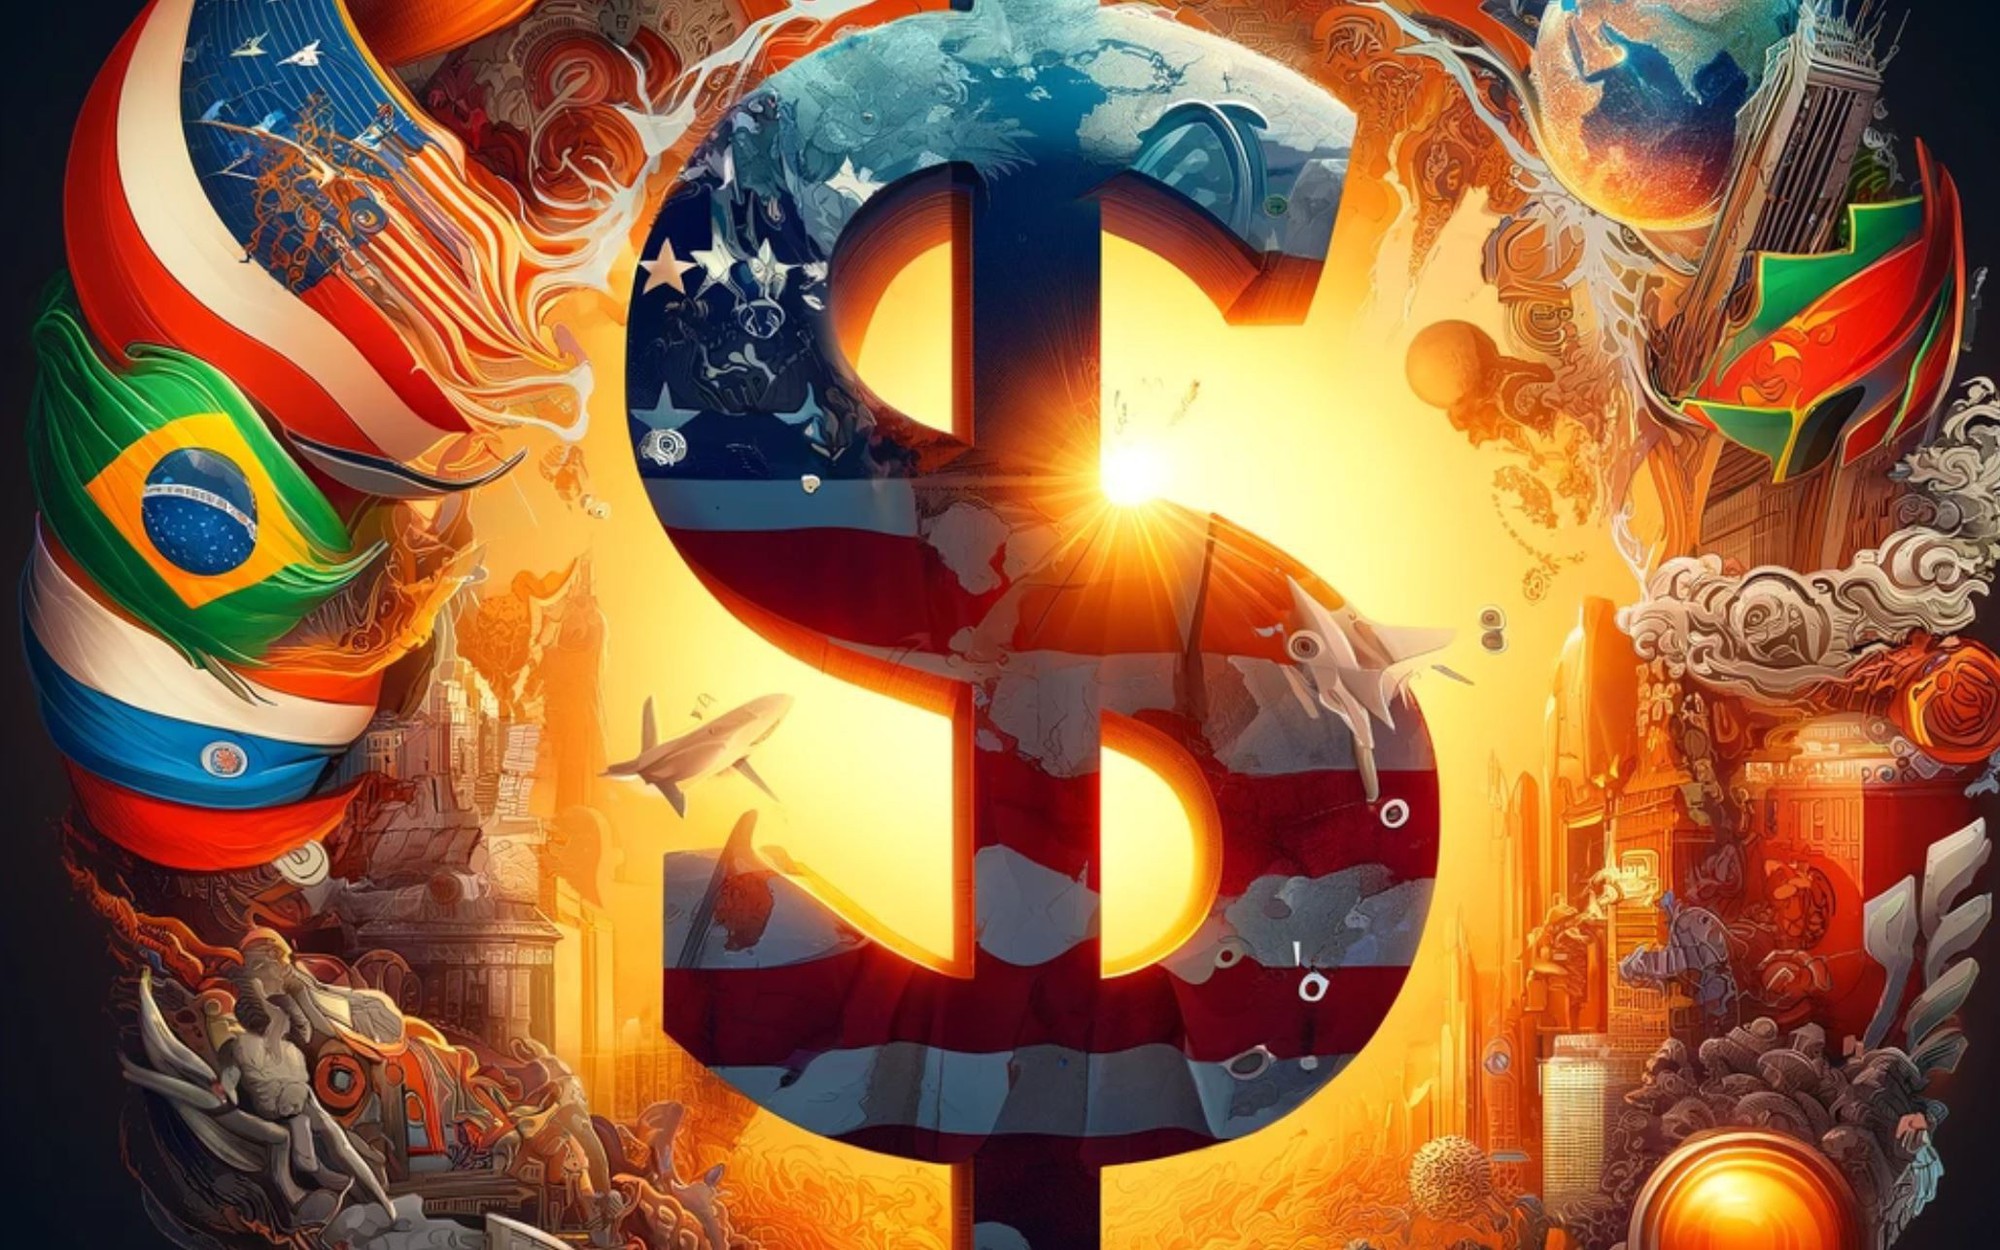 Viễn cảnh đen tối của Mỹ khi BRICS loại bỏ hoàn toàn đồng đô la: Chuyên gia khẳng định 'đang diễn ra'